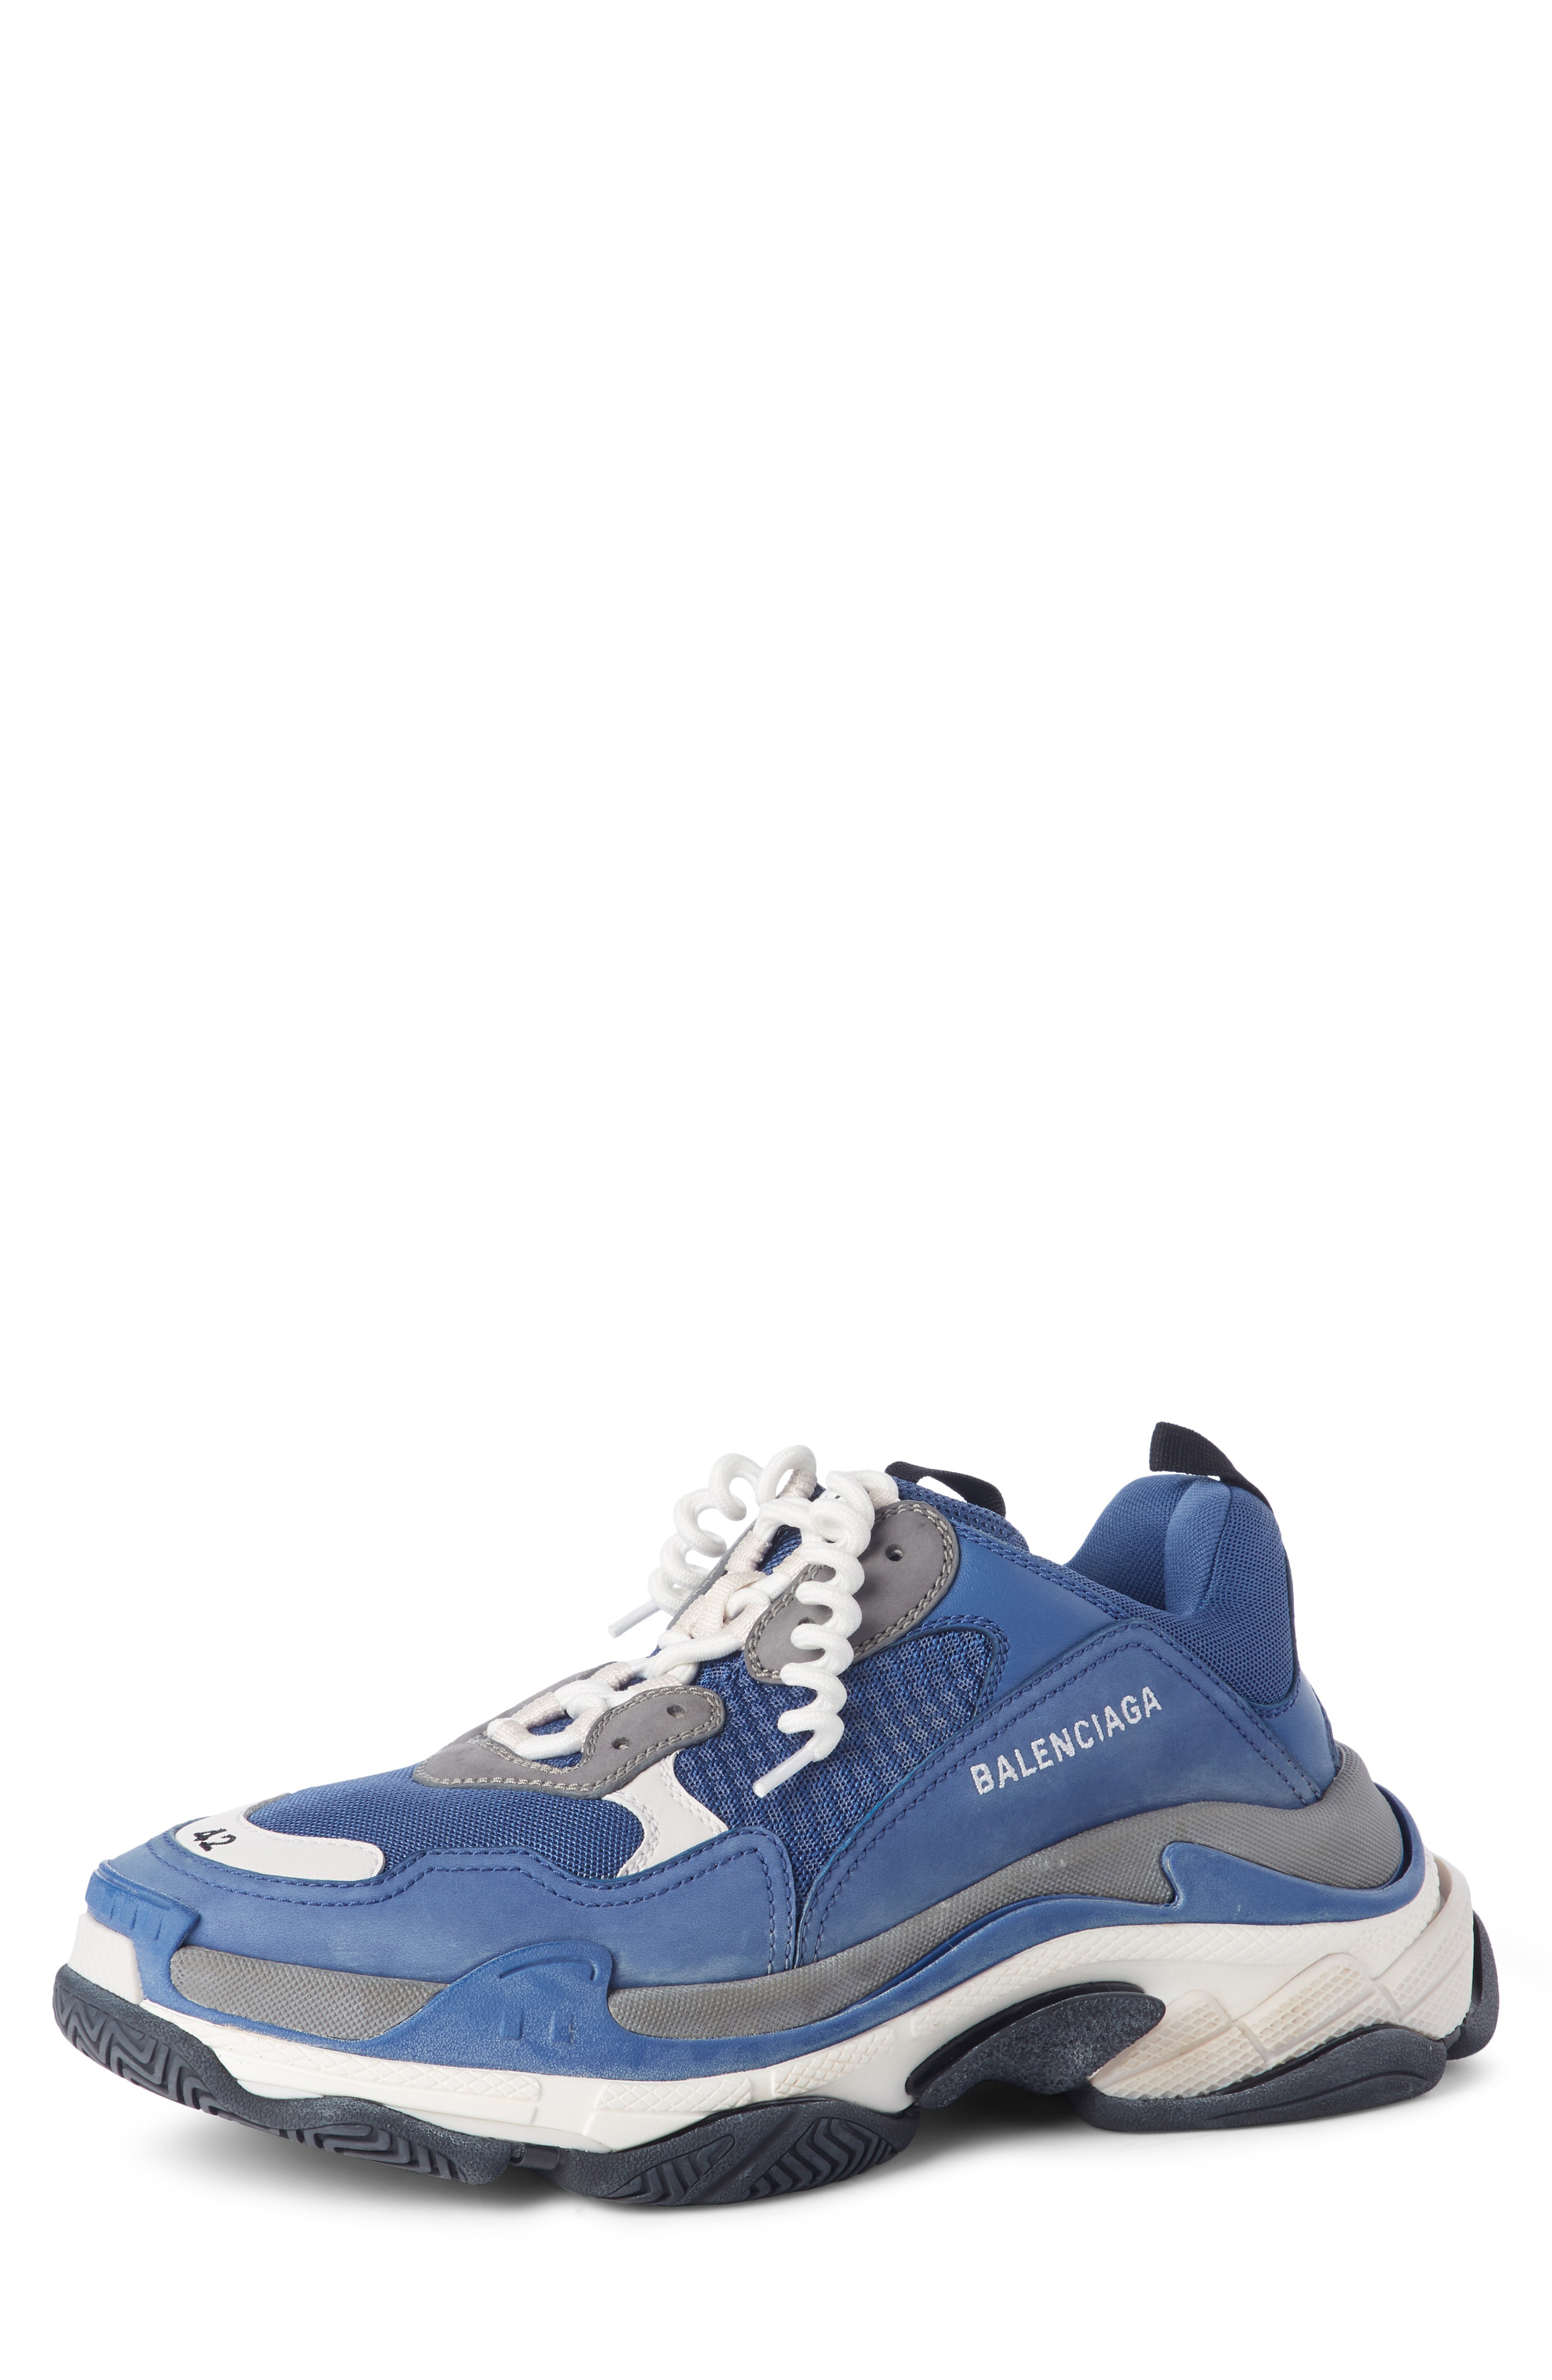 Balenciaga Triple S Sneaker Beige Grey Blue